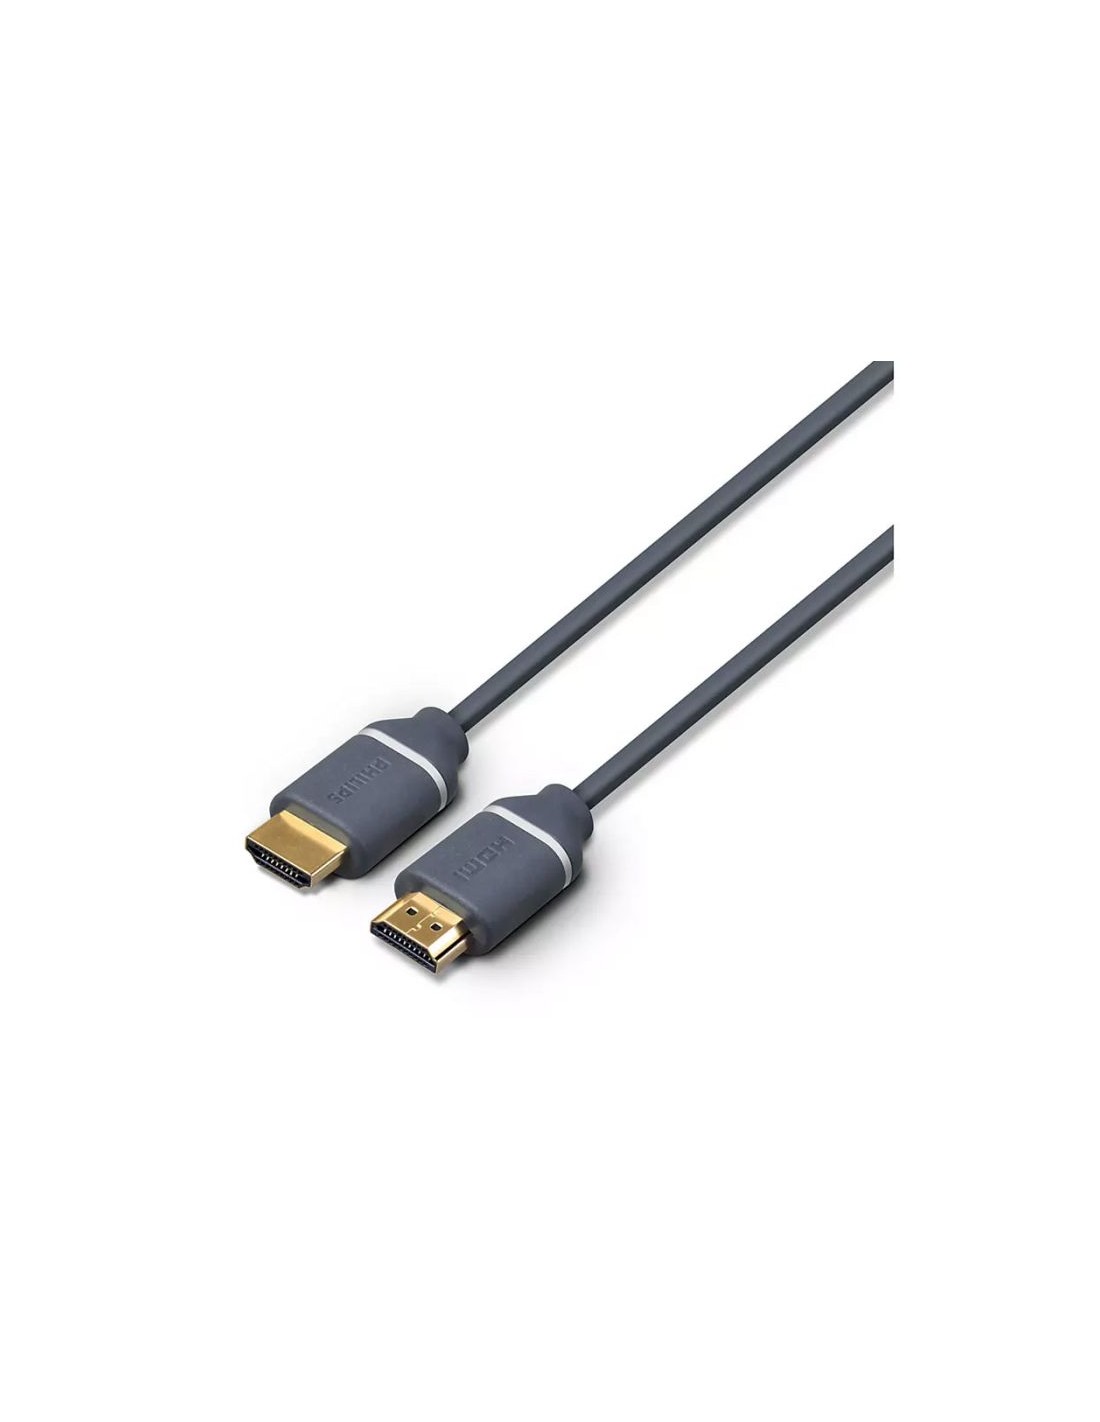 Câble USB Type-C vers HDMI 4K - T'nB